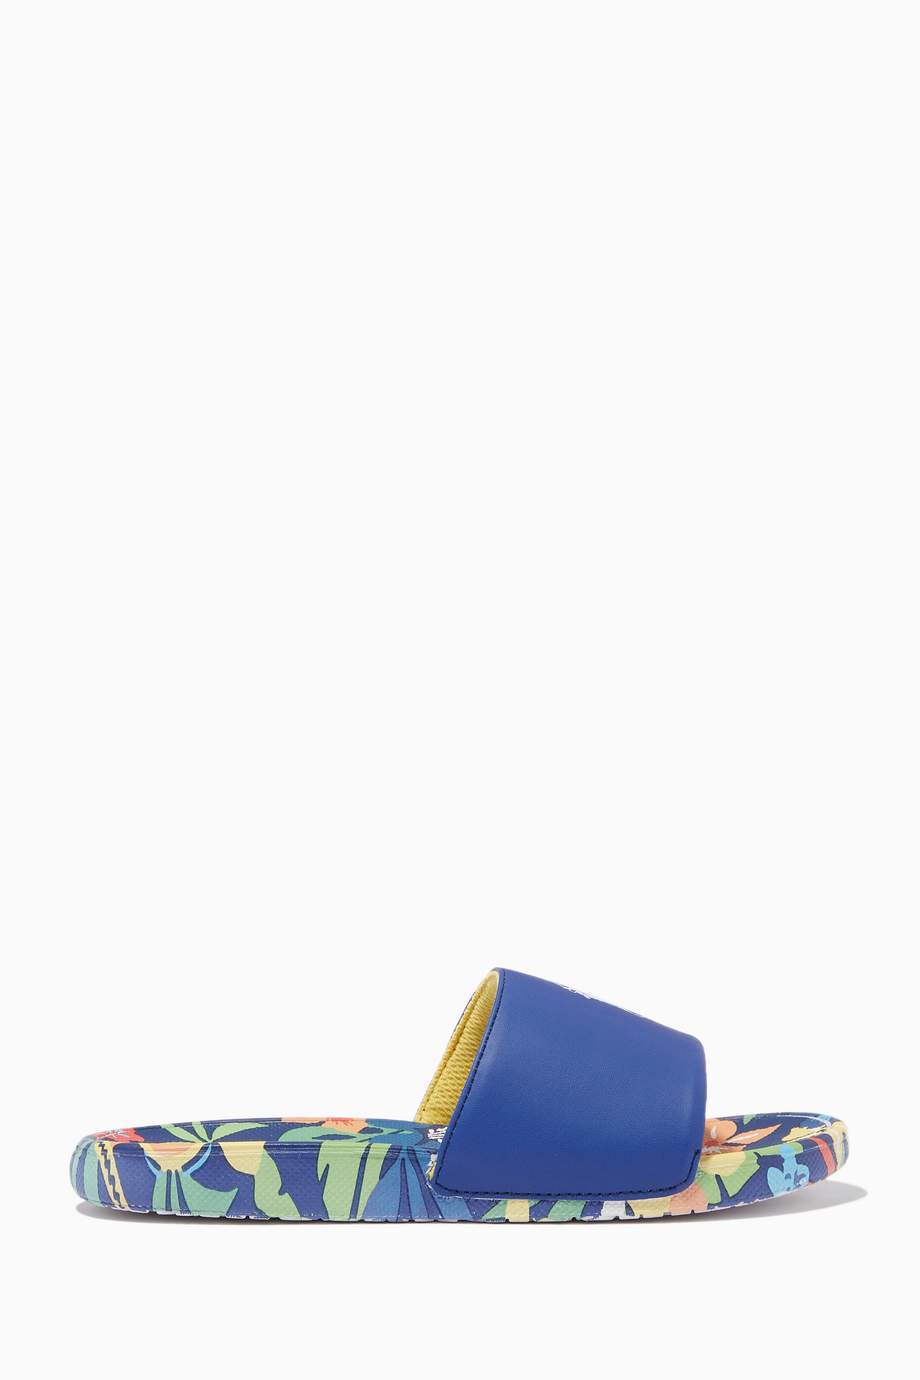 Shop Polo Ralph Lauren Blue Cayson Slide Sandals in Faux Leather ...